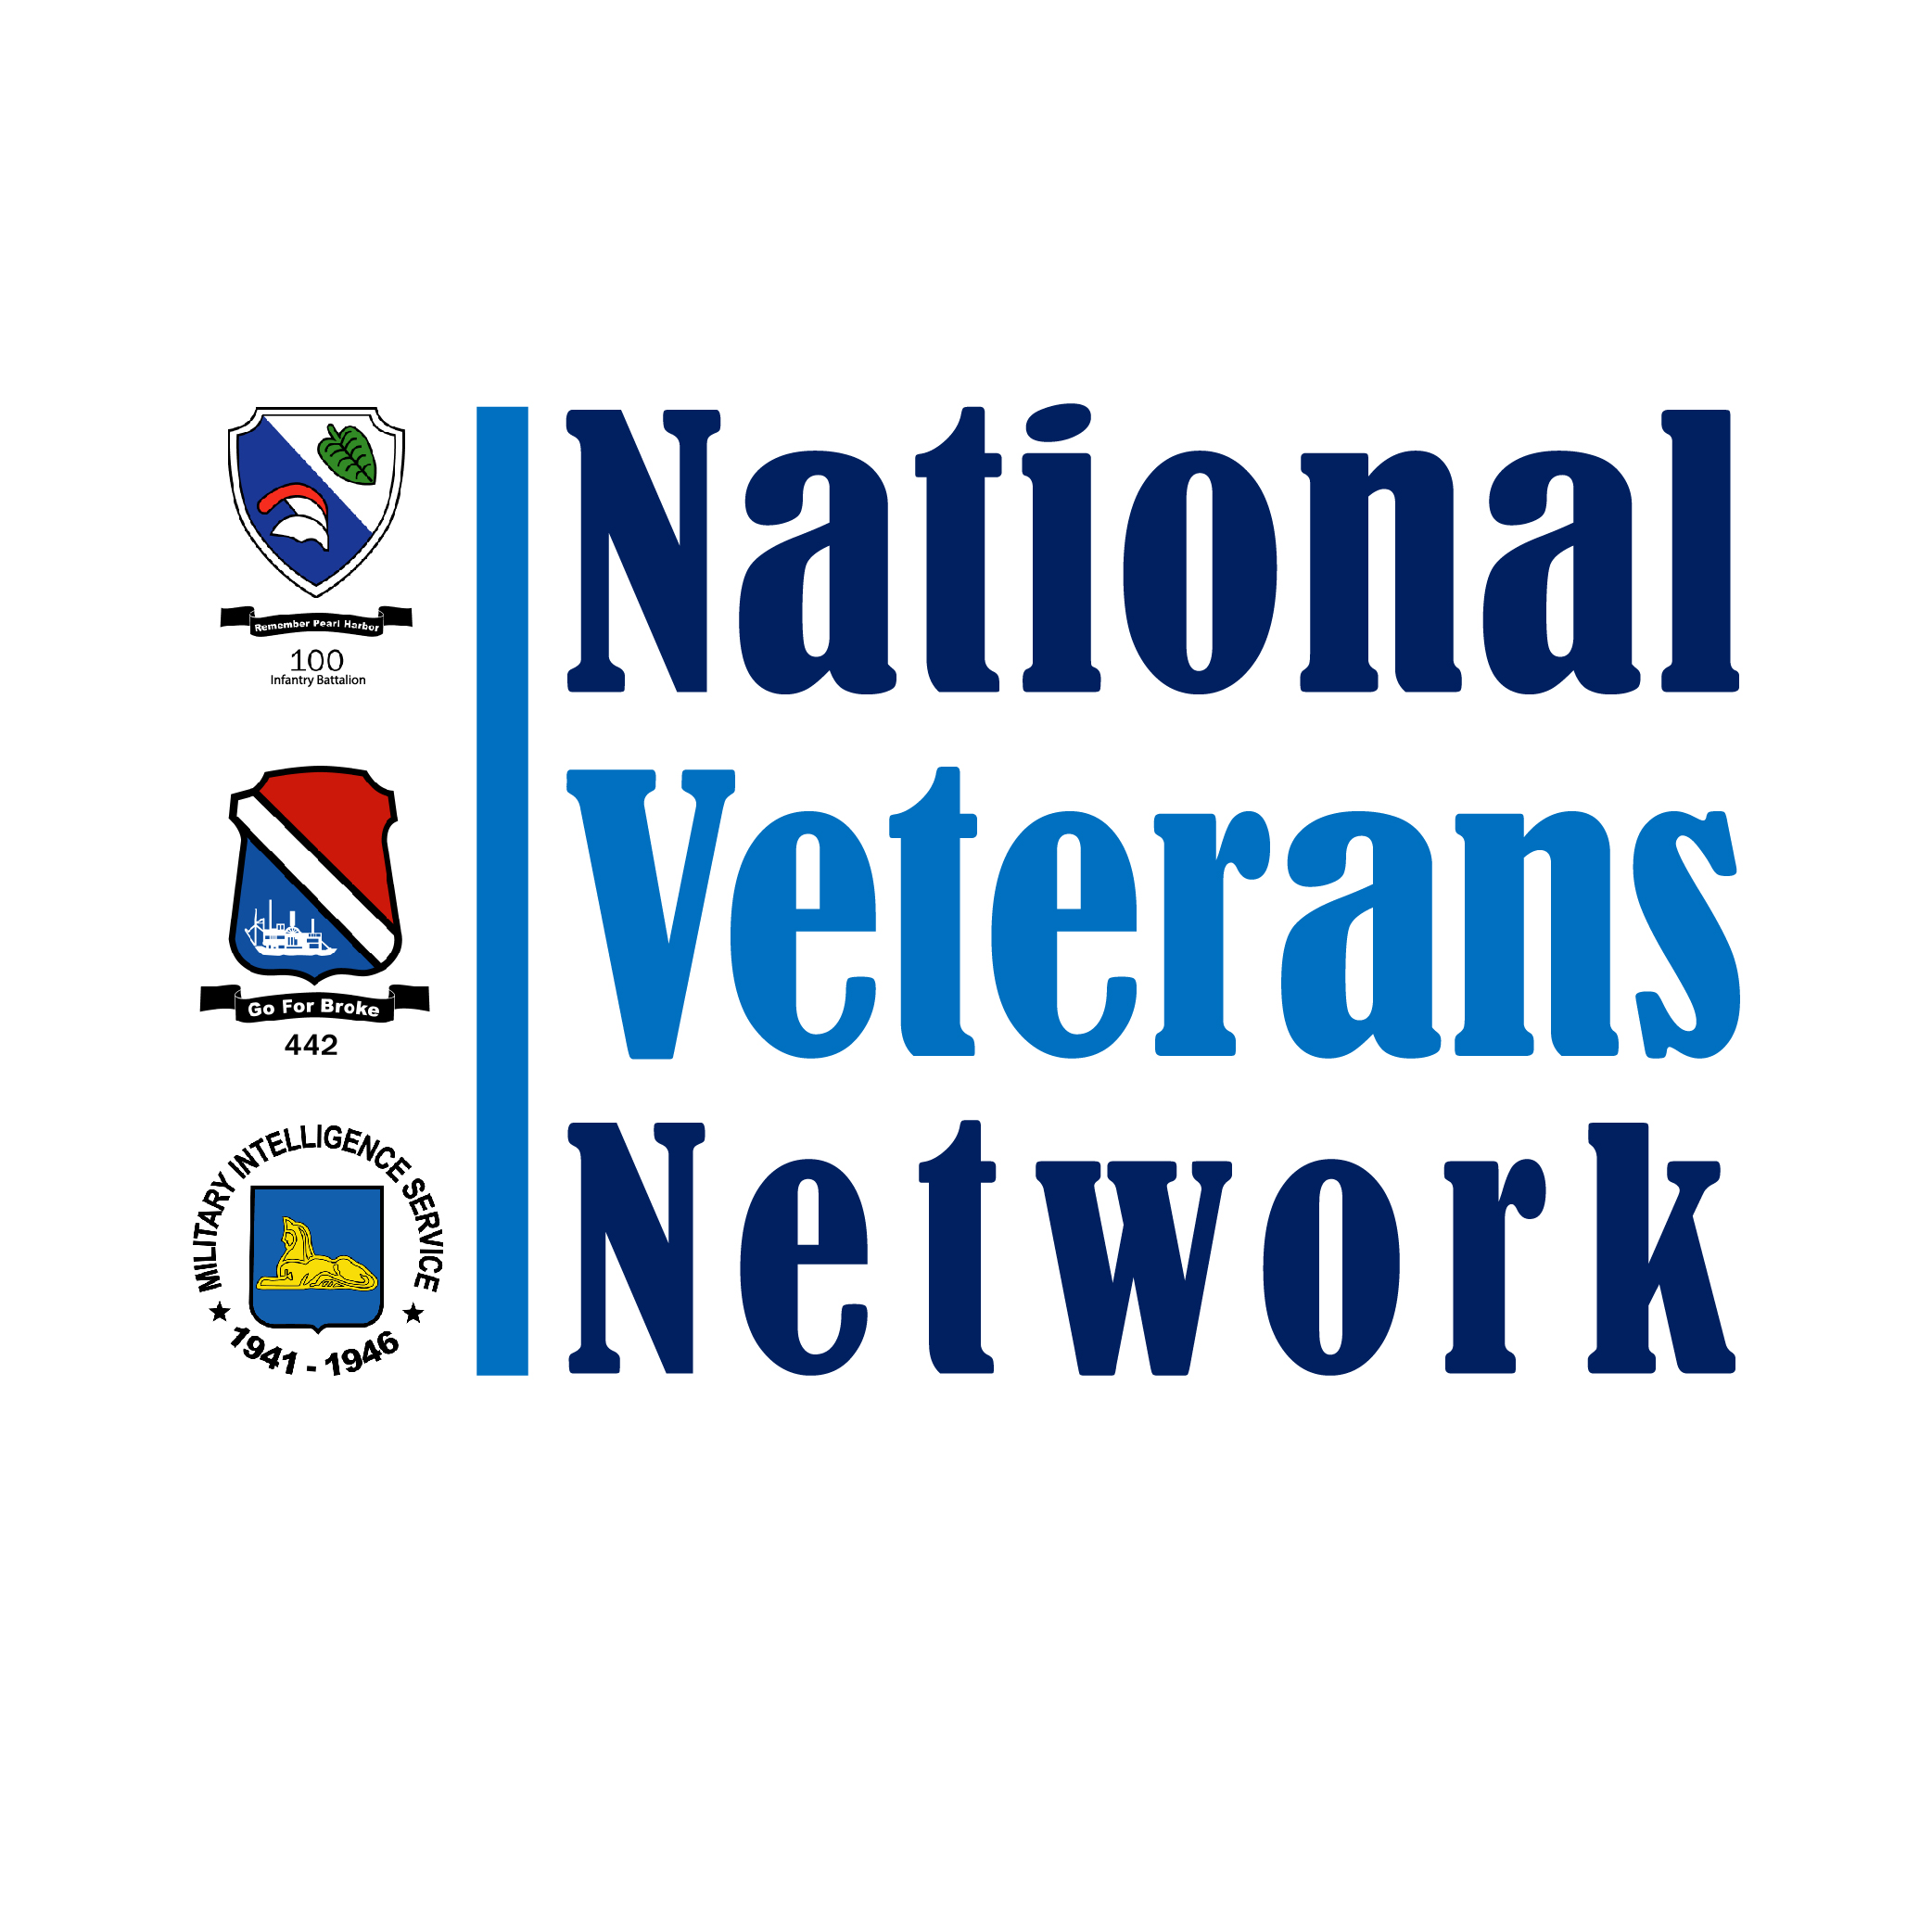 National Veterans Network